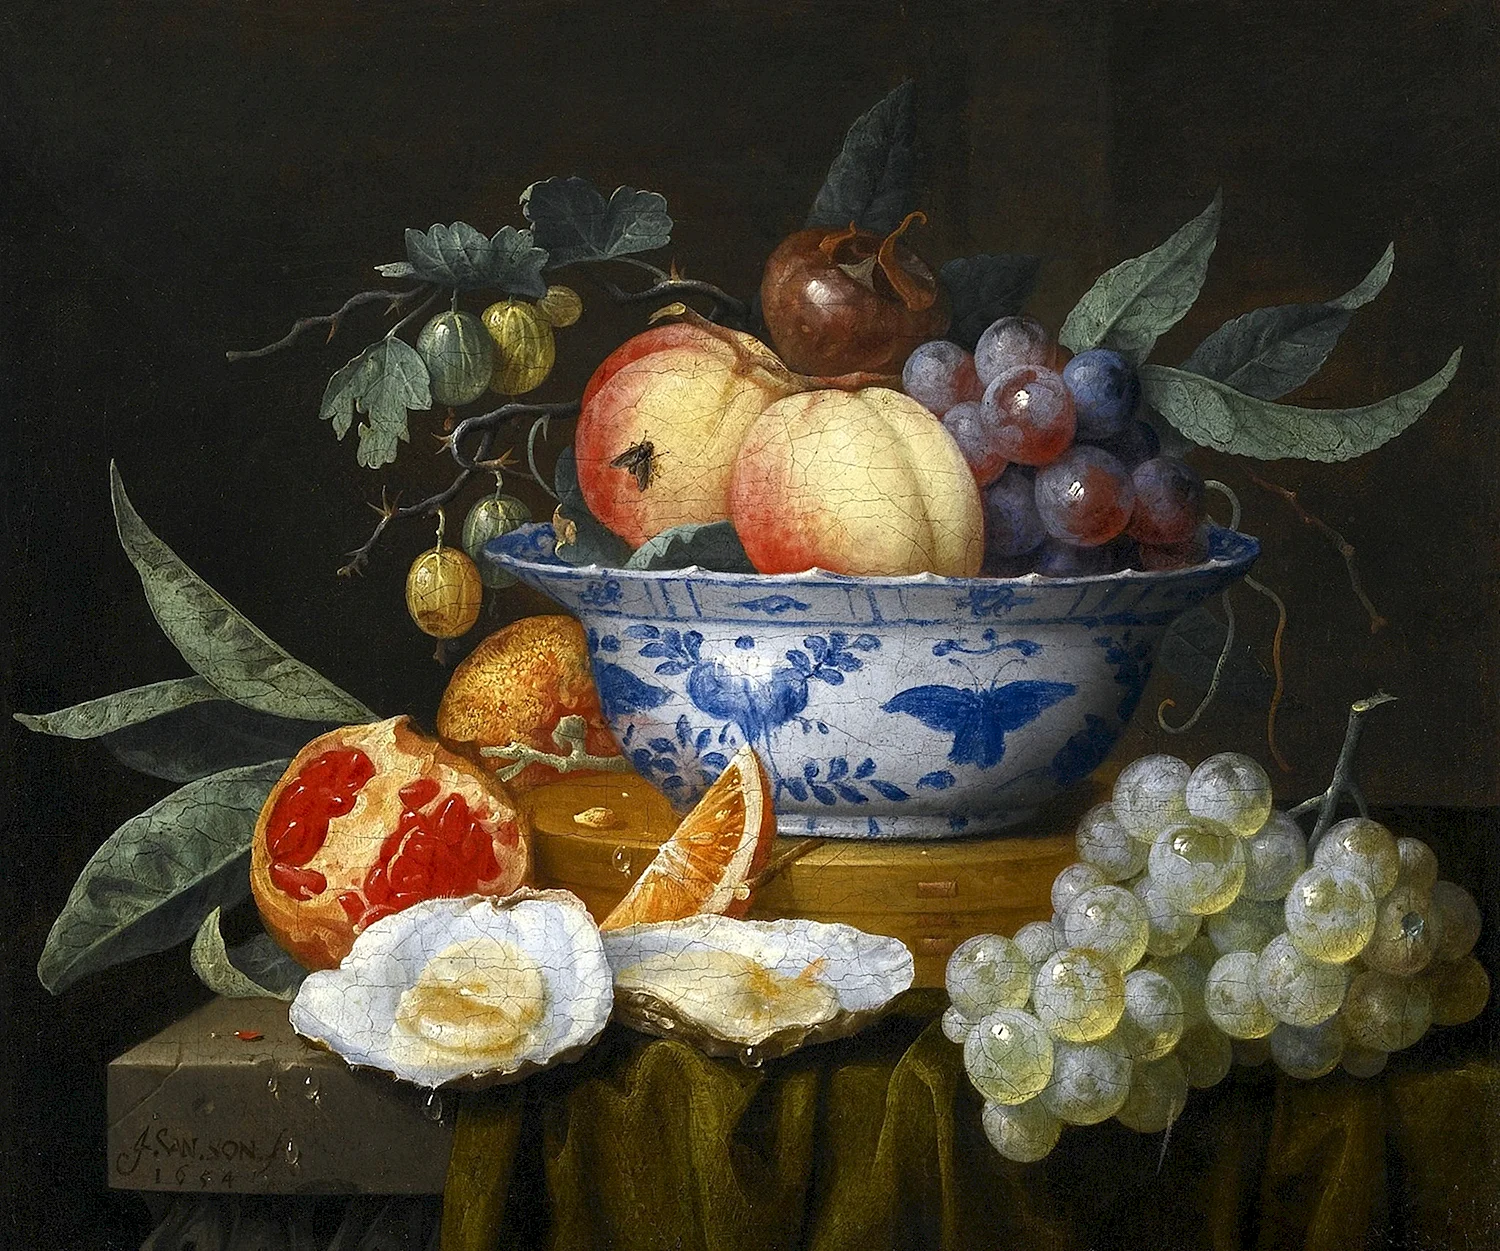 Йорис Ван сон, Joris van son, 1623-1667